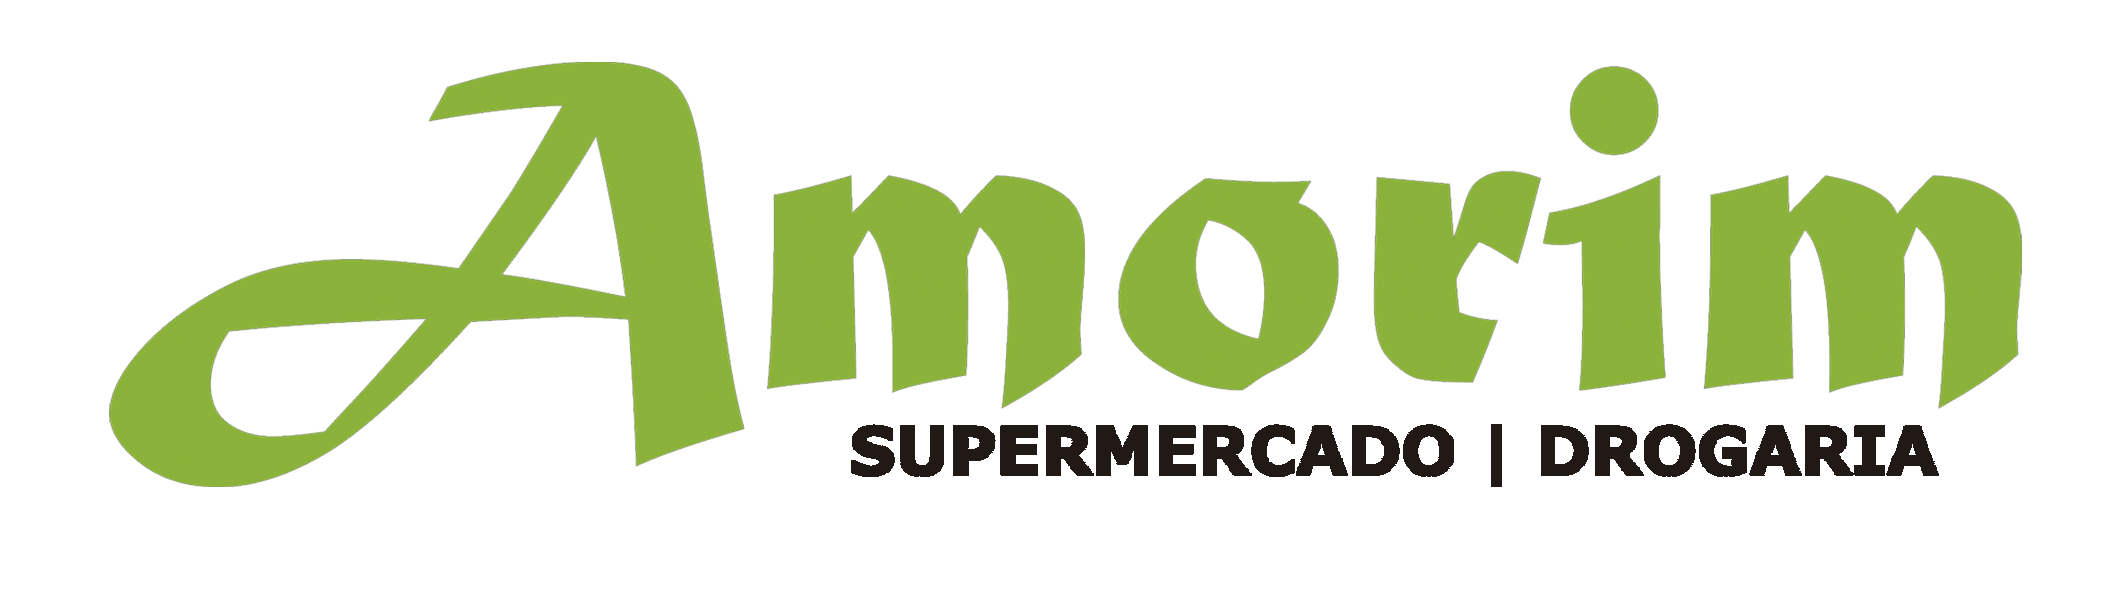 Supermercado Amorim